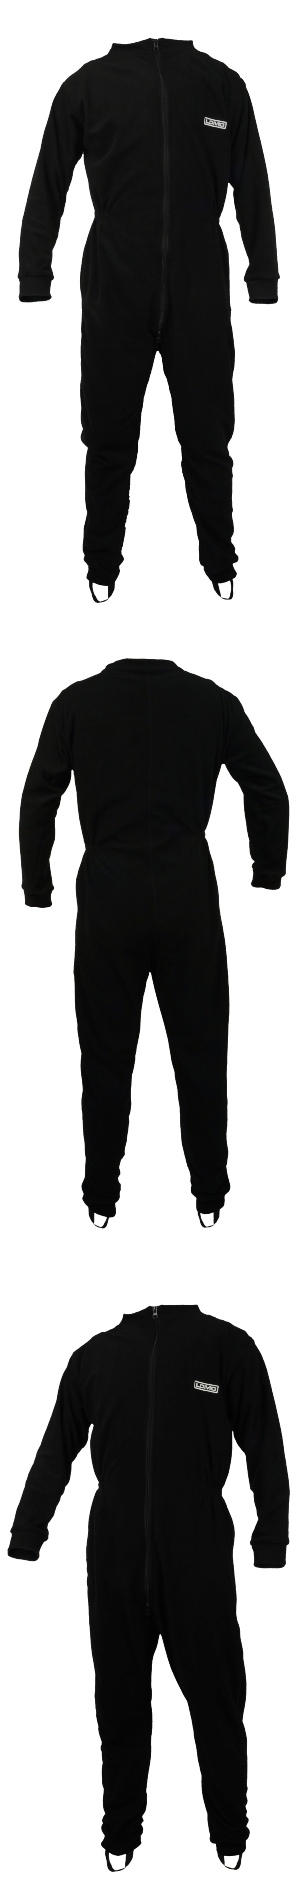 Lomo Element Polar Fleece Drysuit Undersuit - _fleece-drysuit-undersuits-kayaking-1369736189